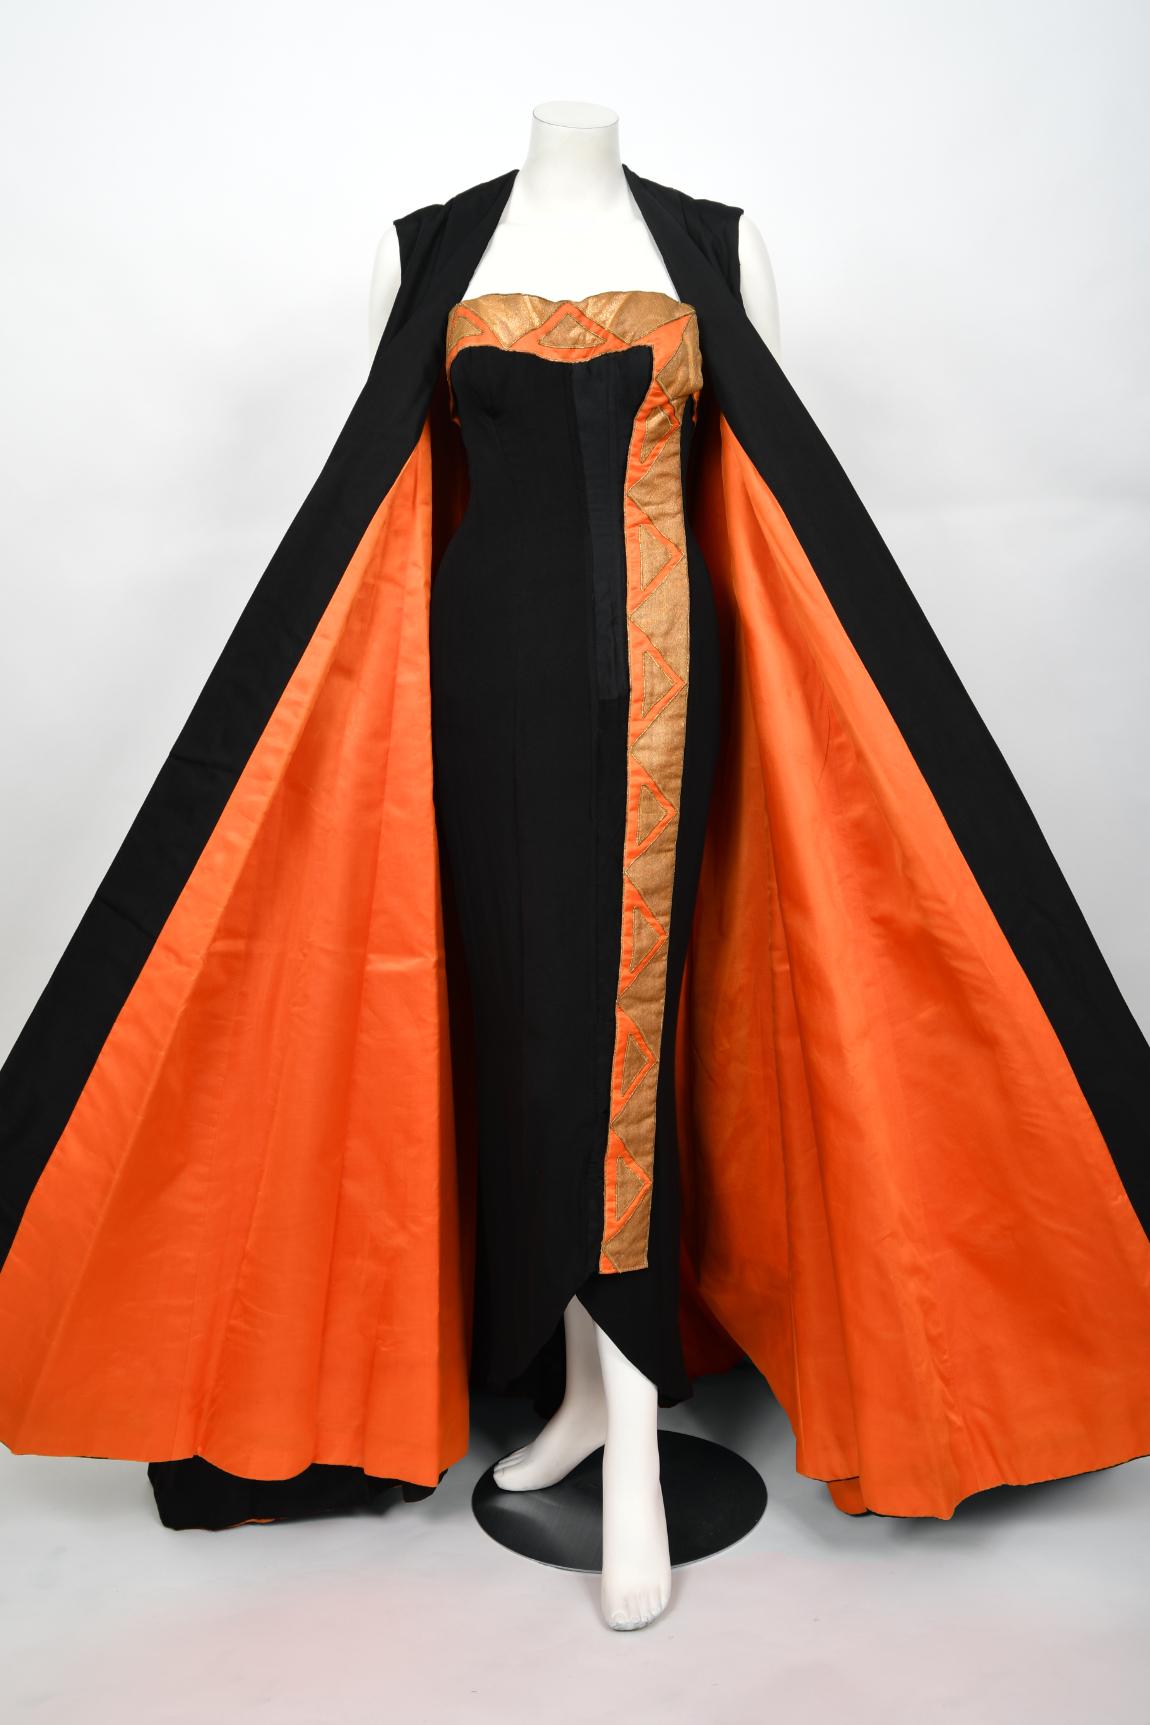 Un ensemble vestimentaire unique, important et à couper le souffle, réalisé sur mesure pour Yma Sumac, datant du milieu des années 1950. Yma Sumac (1922-2008) était une soprano péruvienne de renom et la première reine de l'exotisme. Sa renommée